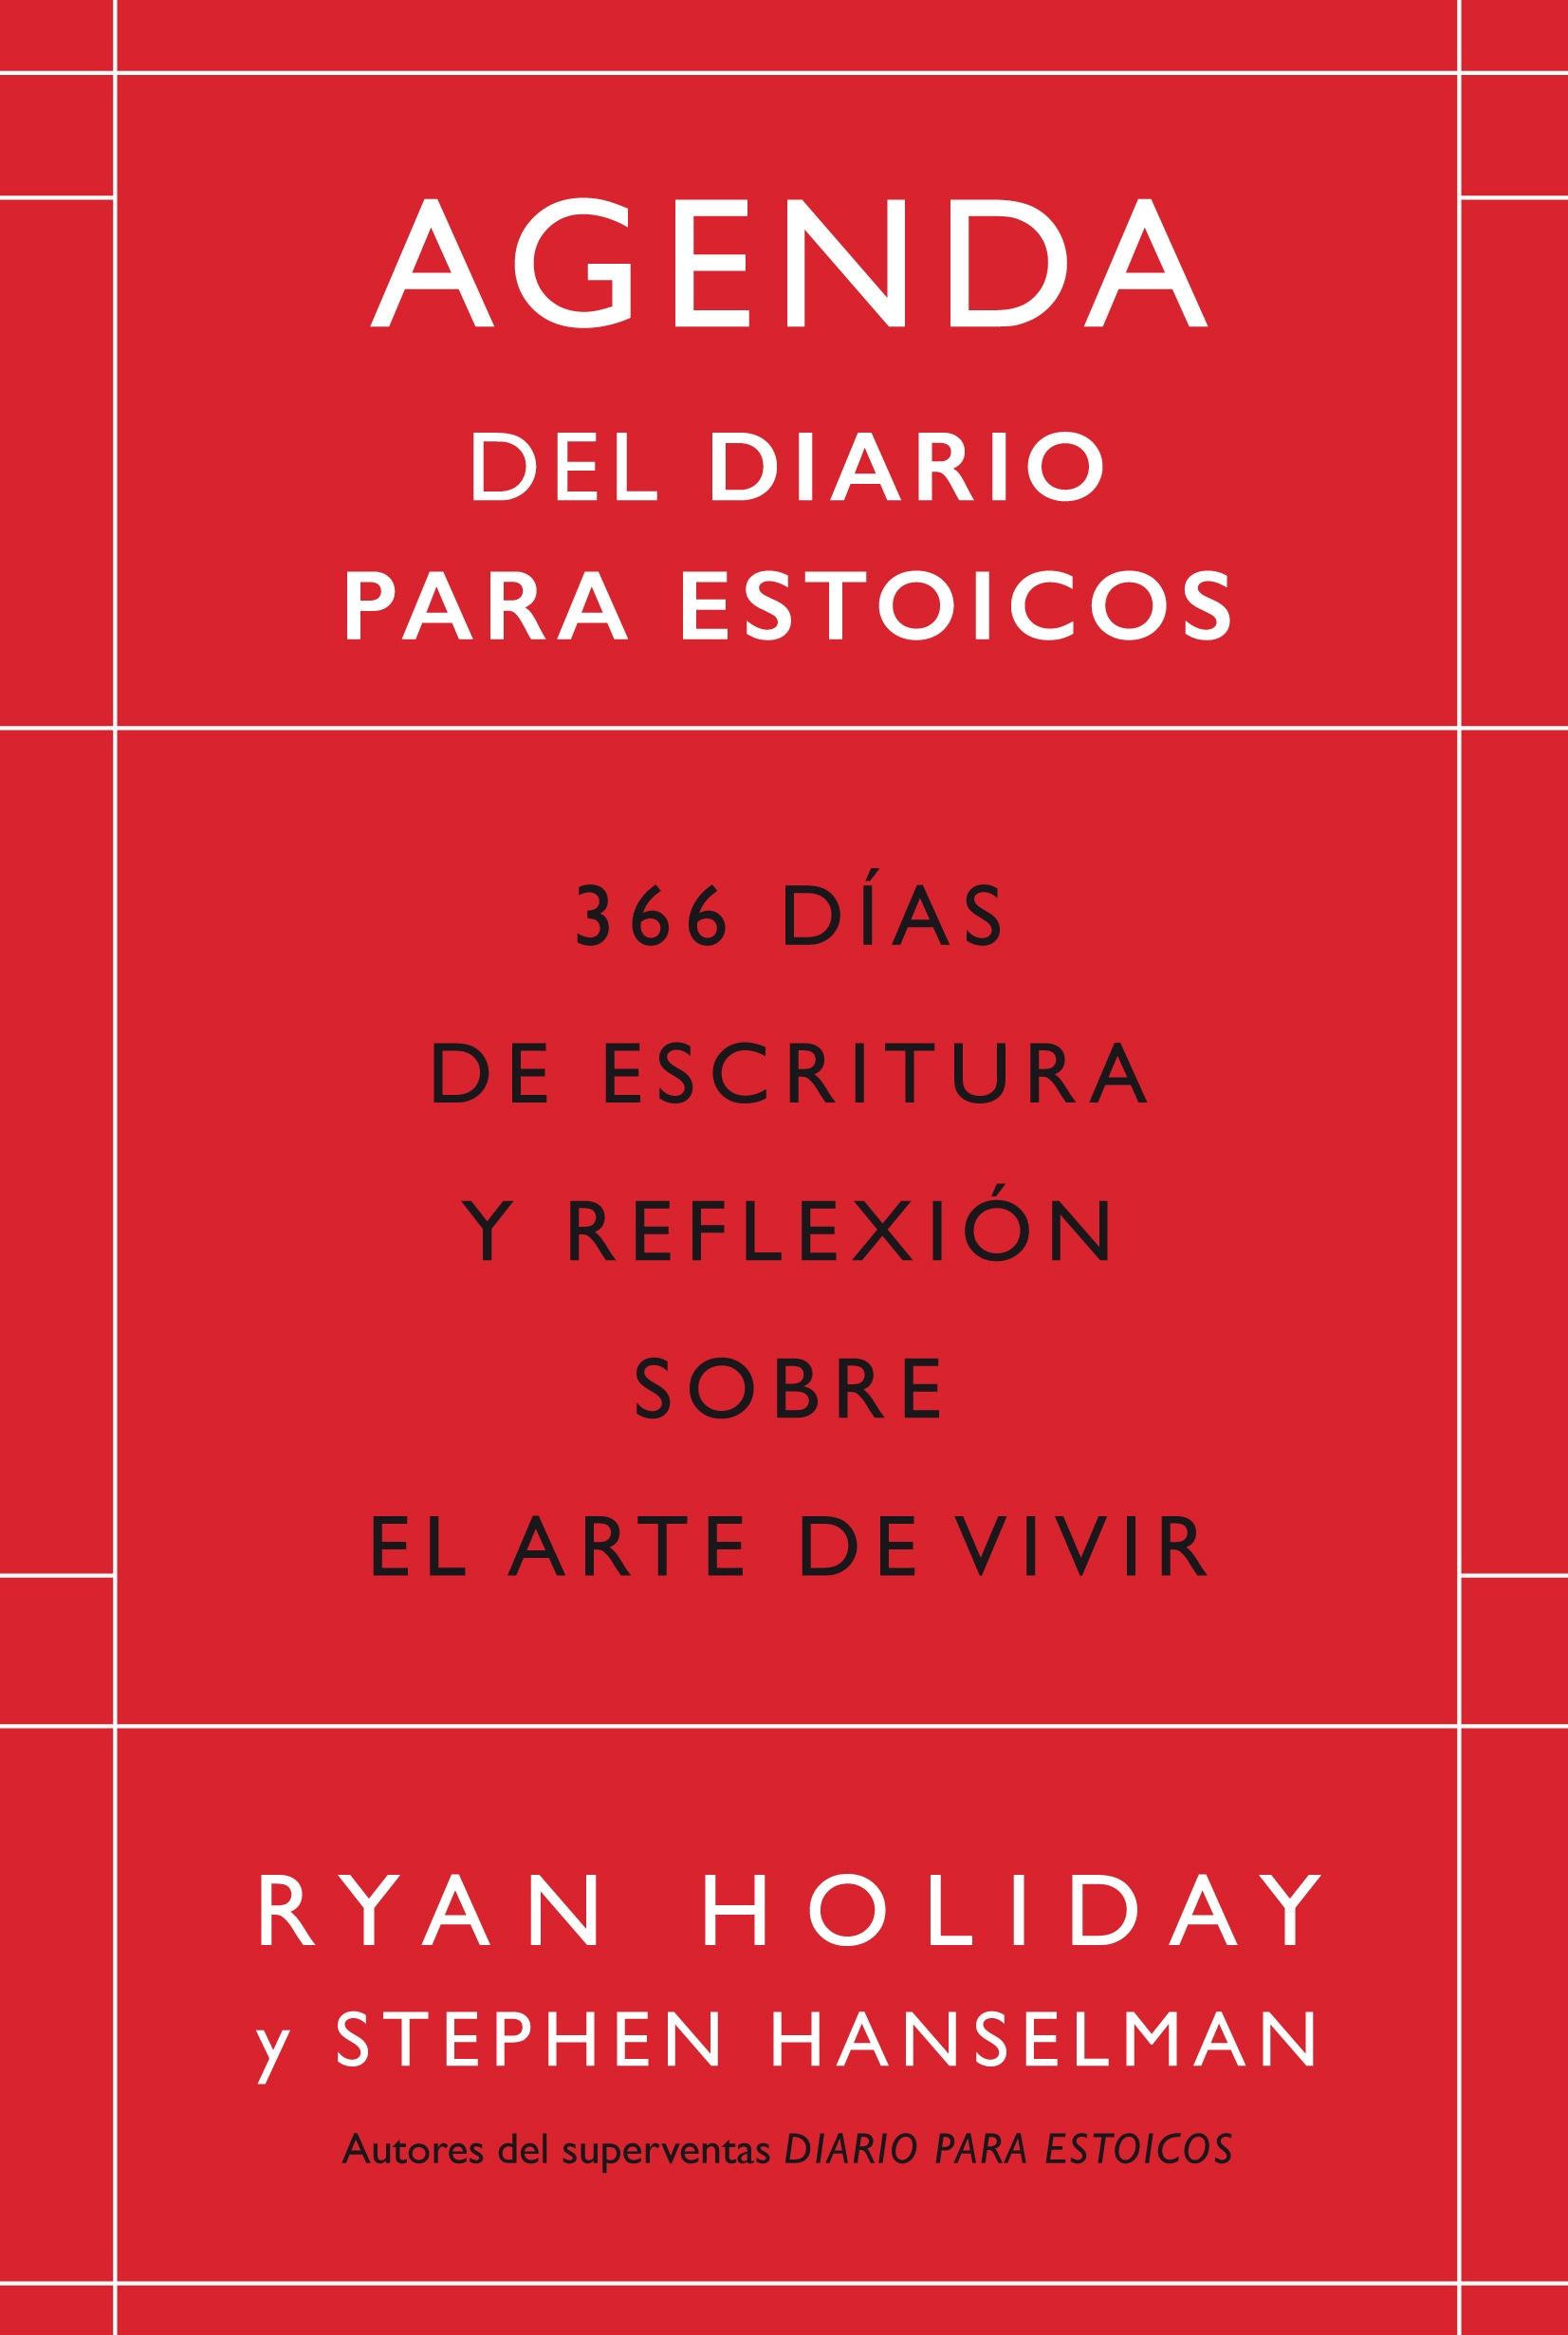 Agenda de Diario para Estoicos (Ed. Limitada) "366 Días de Escritura y Reflexión sobre el Arte de Vivir"